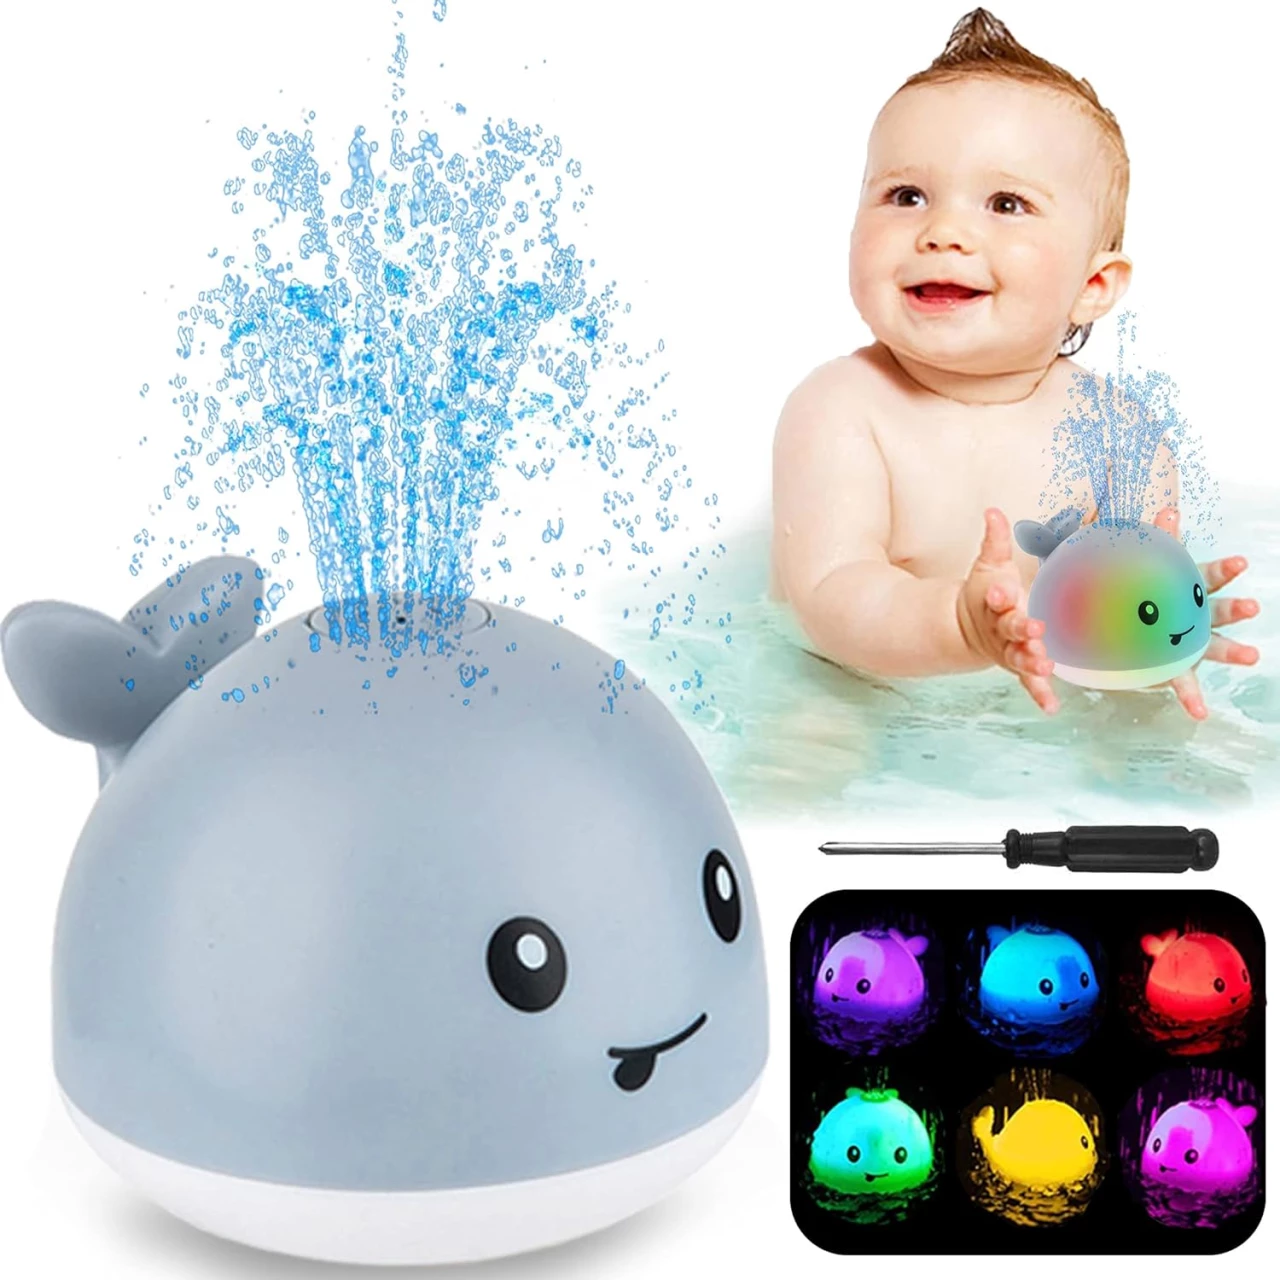 ZHENDUO Baby Bath Toys, Whale Automatic Spray Water Bath Toy